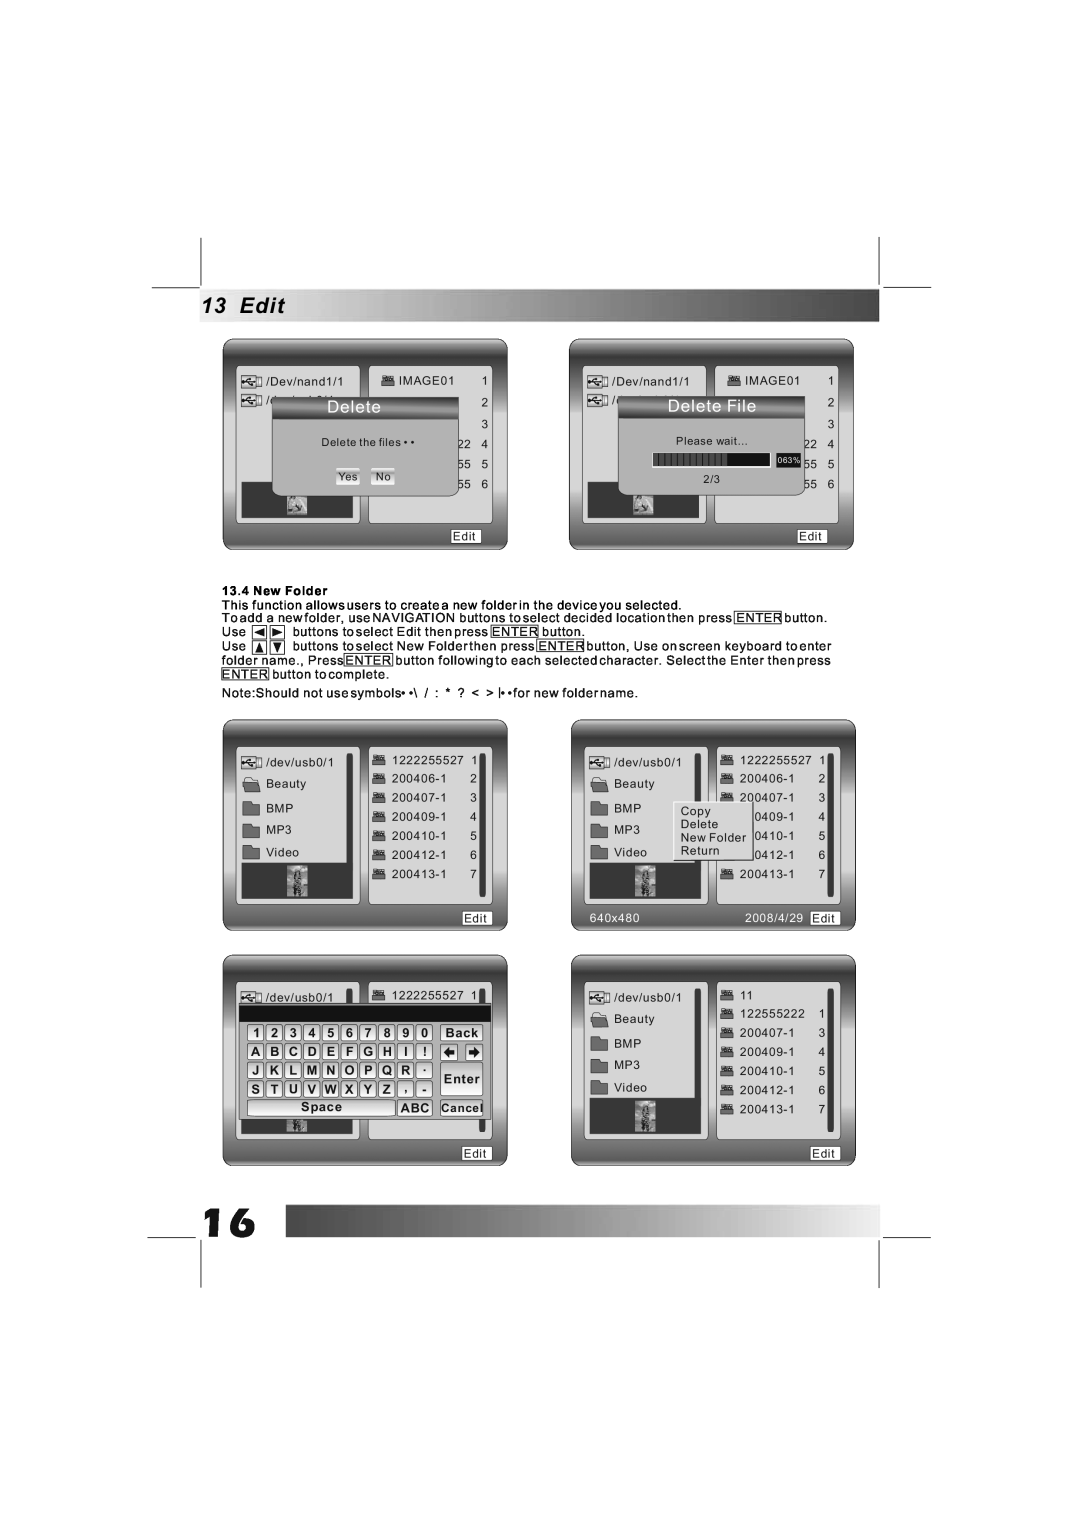 Bush DPF801/DPF1001 manual Delete File, New Folder, 2008/4/29, Edit, 640x480 